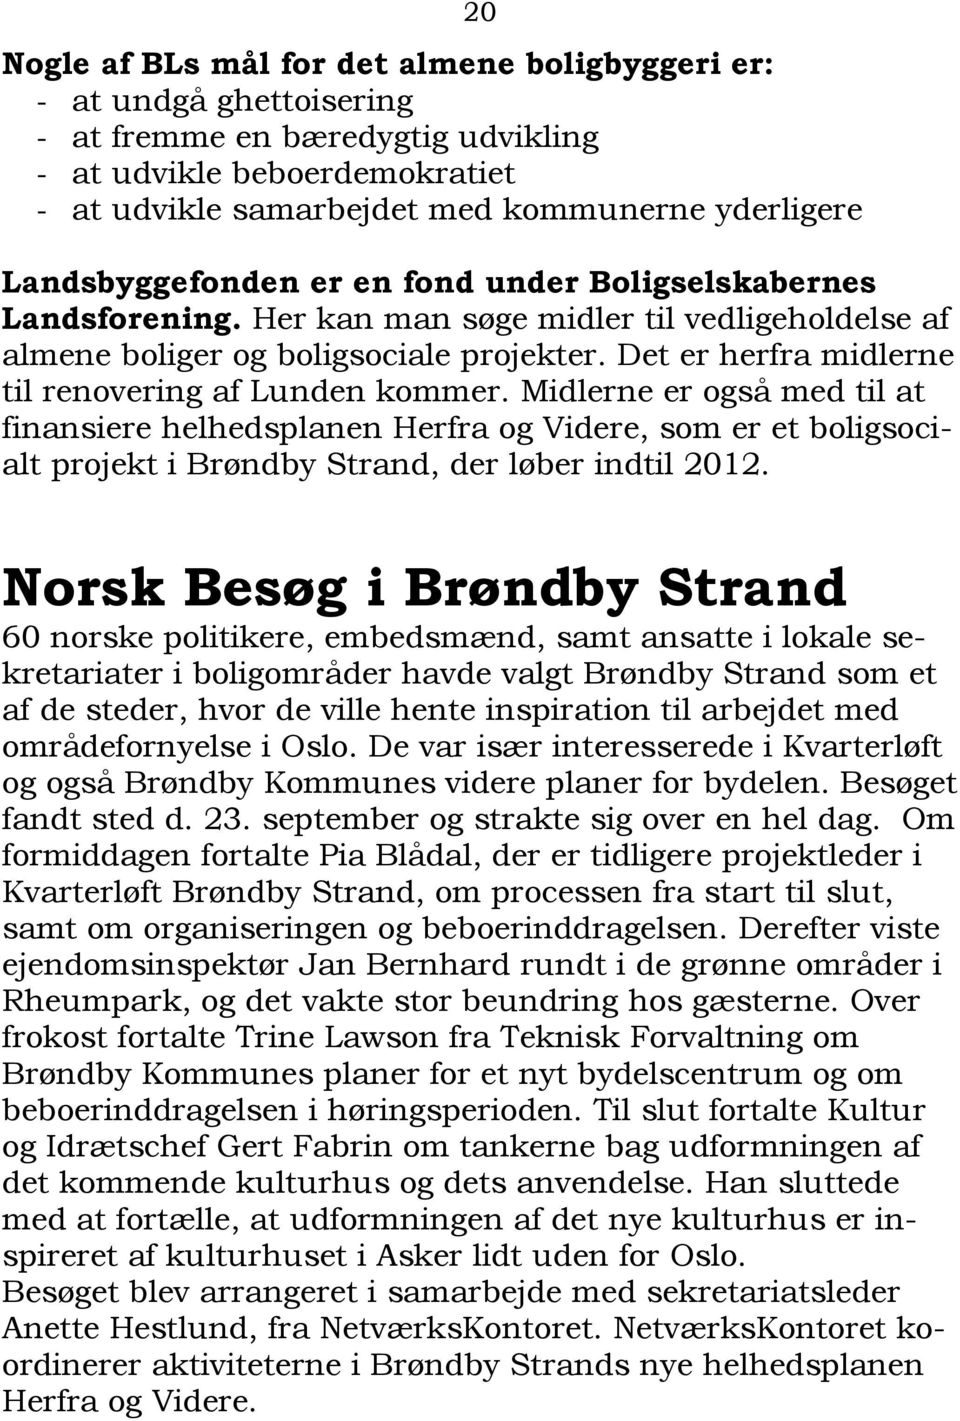 Det er herfra midlerne til renovering af Lunden kommer. Midlerne er også med til at finansiere helhedsplanen Herfra og Videre, som er et boligsocialt projekt i Brøndby Strand, der løber indtil 2012.